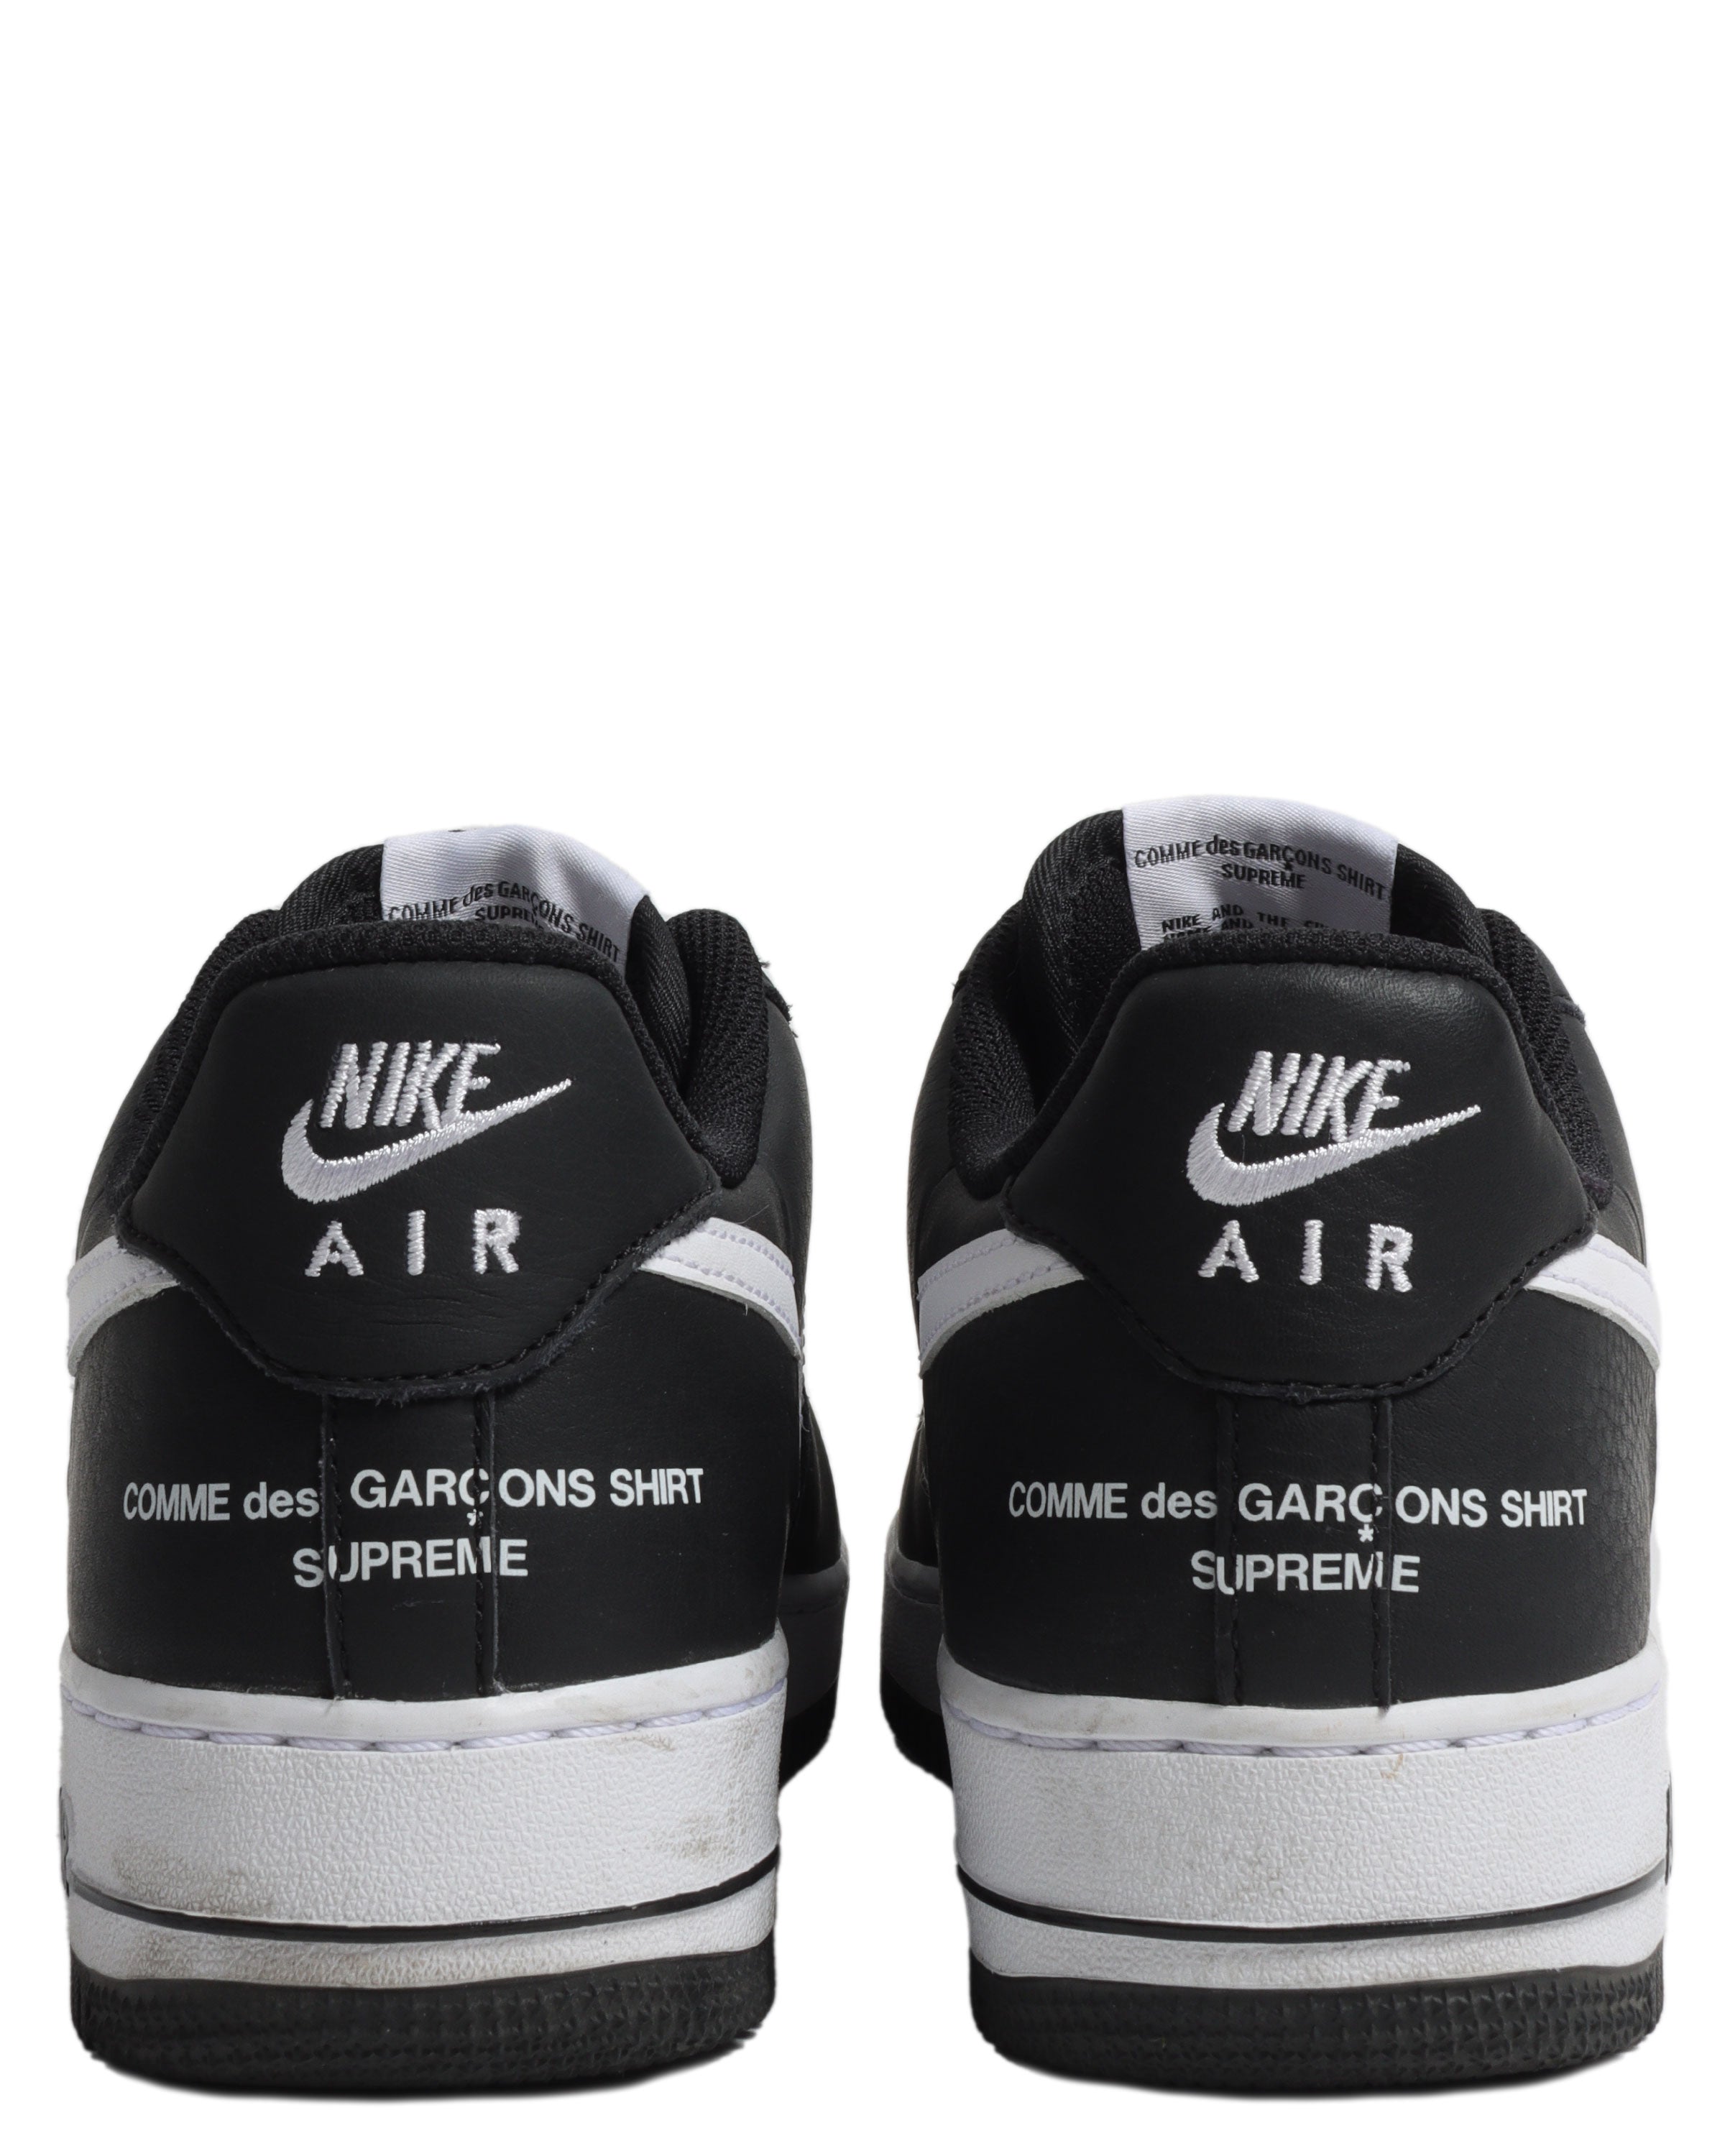 roem wond Kan weerstaan Nike Supreme Comme des Garcons Air Force 1 Low